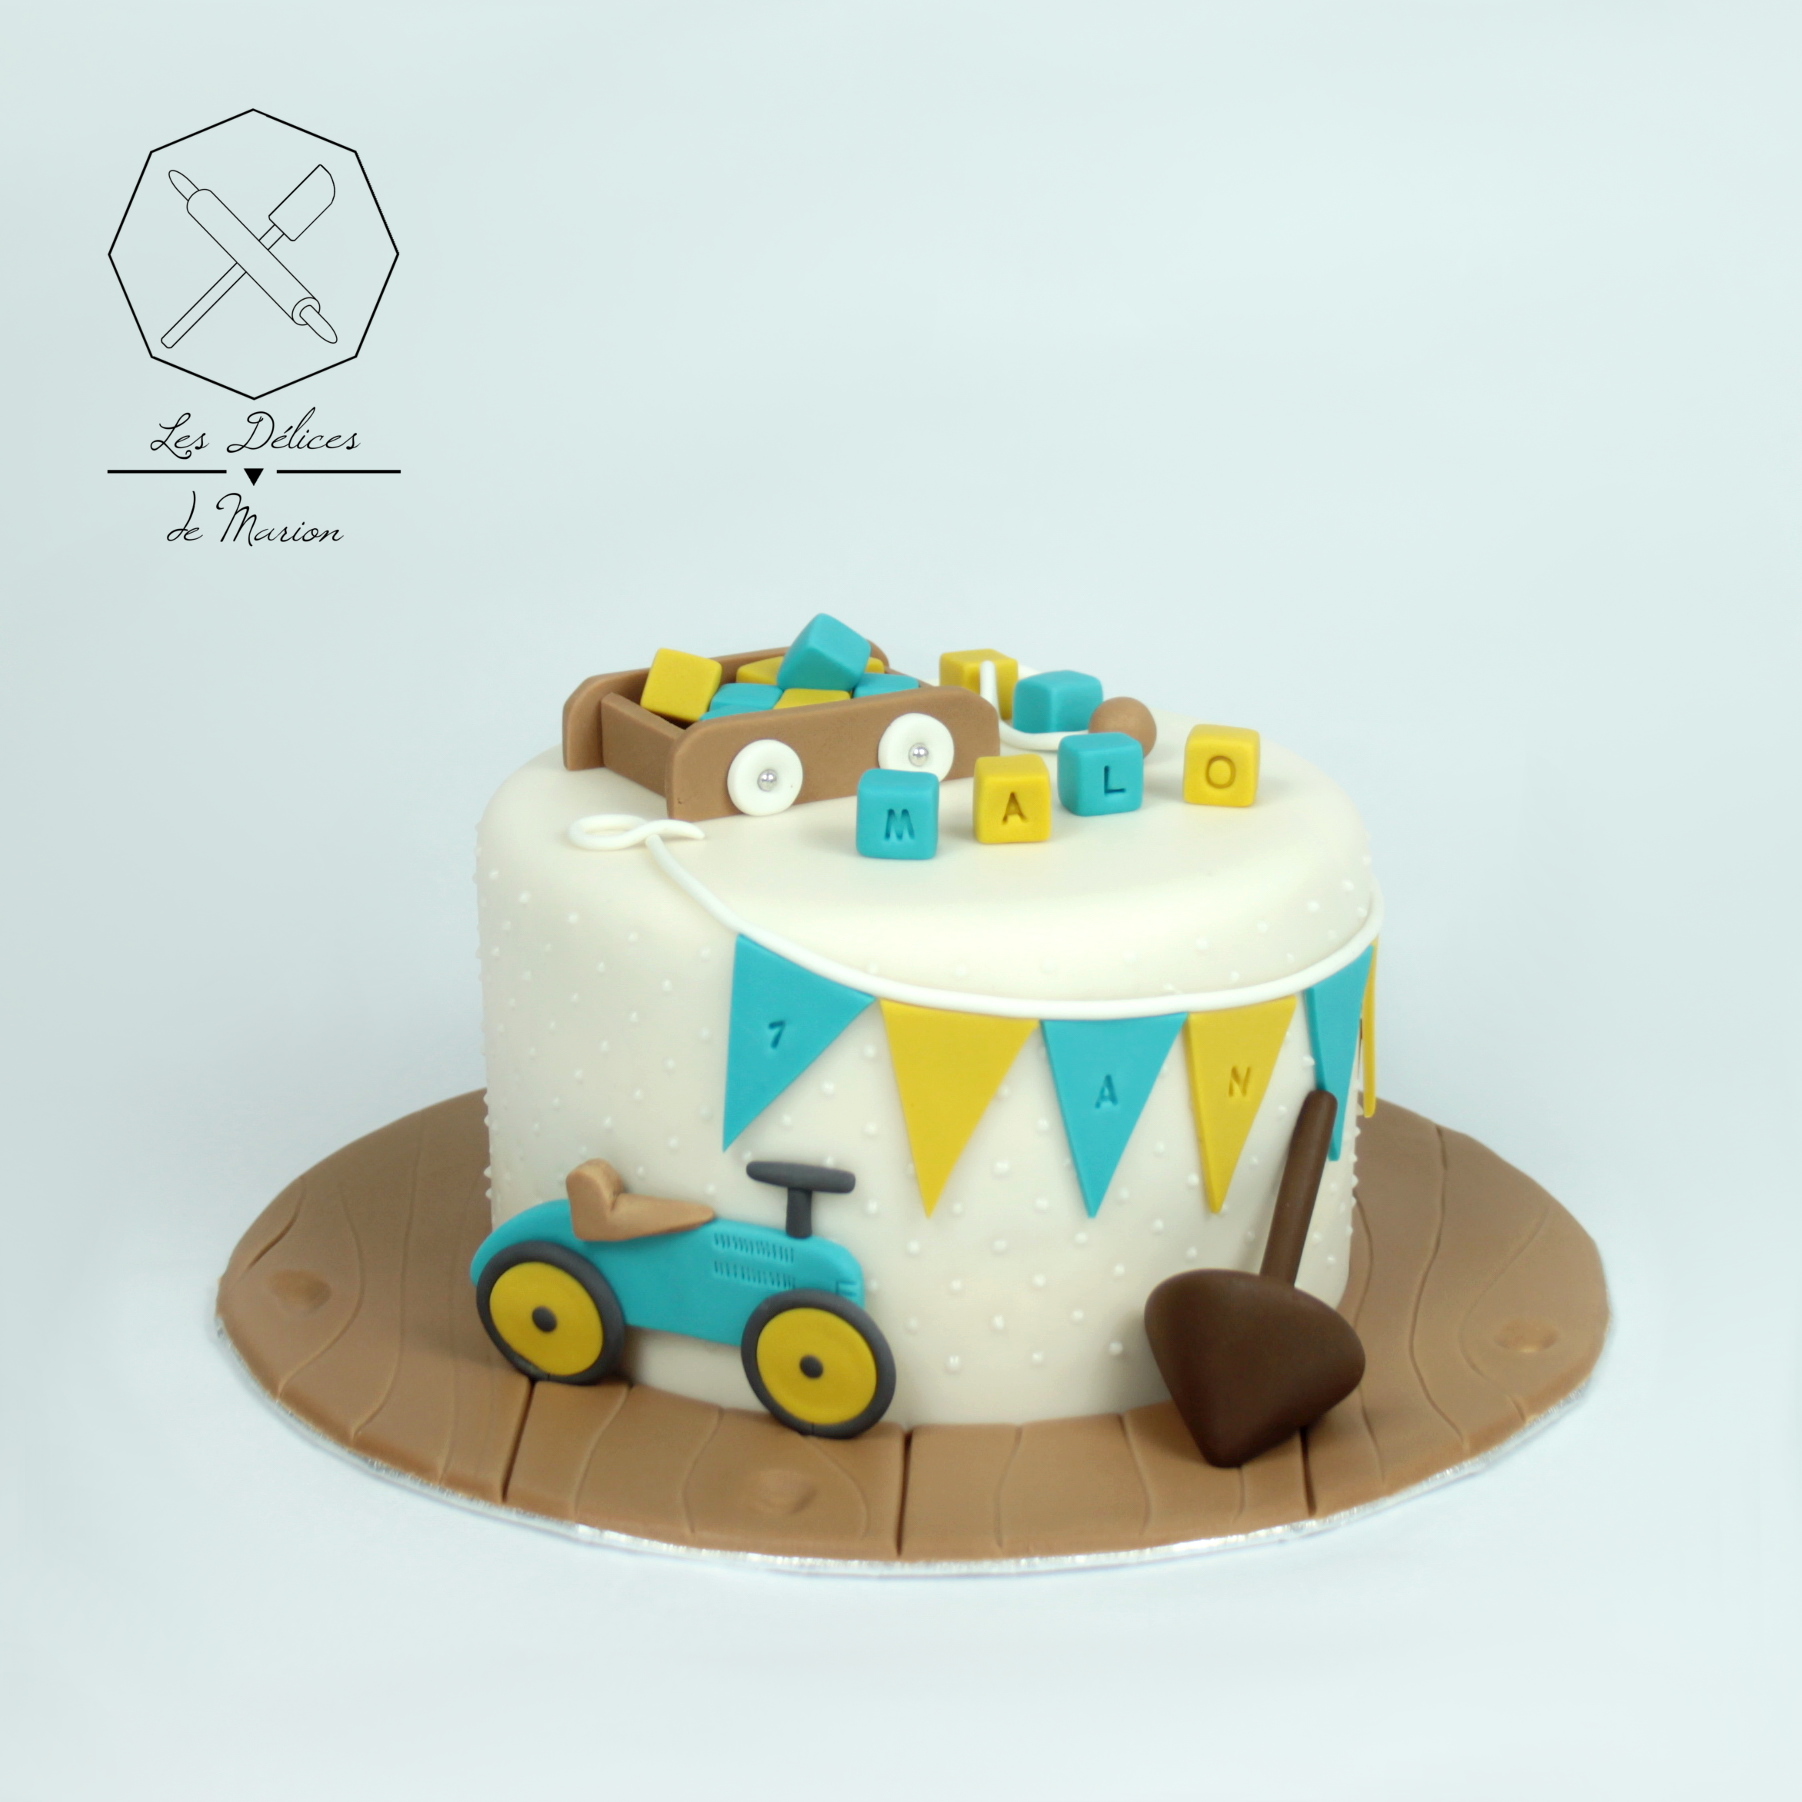 gateau_jouets_anciens_porteur_voiture_toupie_chariot_bleu_jaune_cake-design_delicesmarion